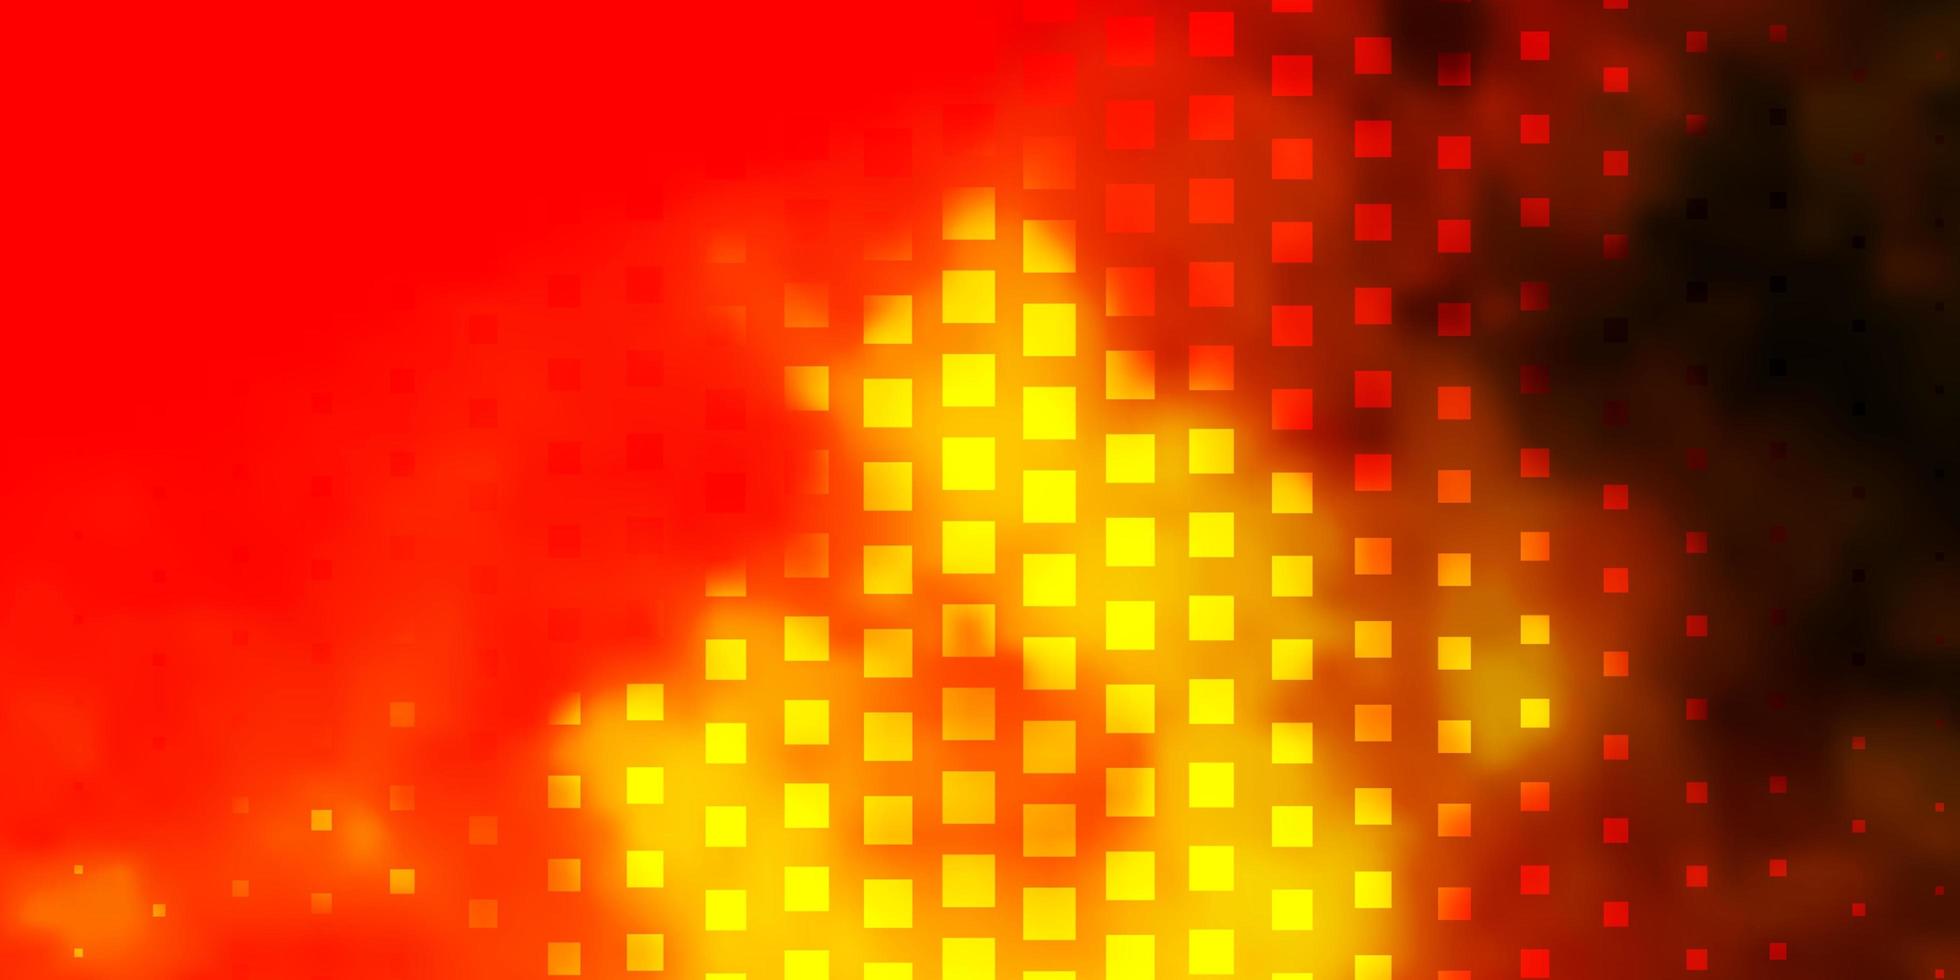 Fondo de vector rojo, amarillo claro con rectángulos.